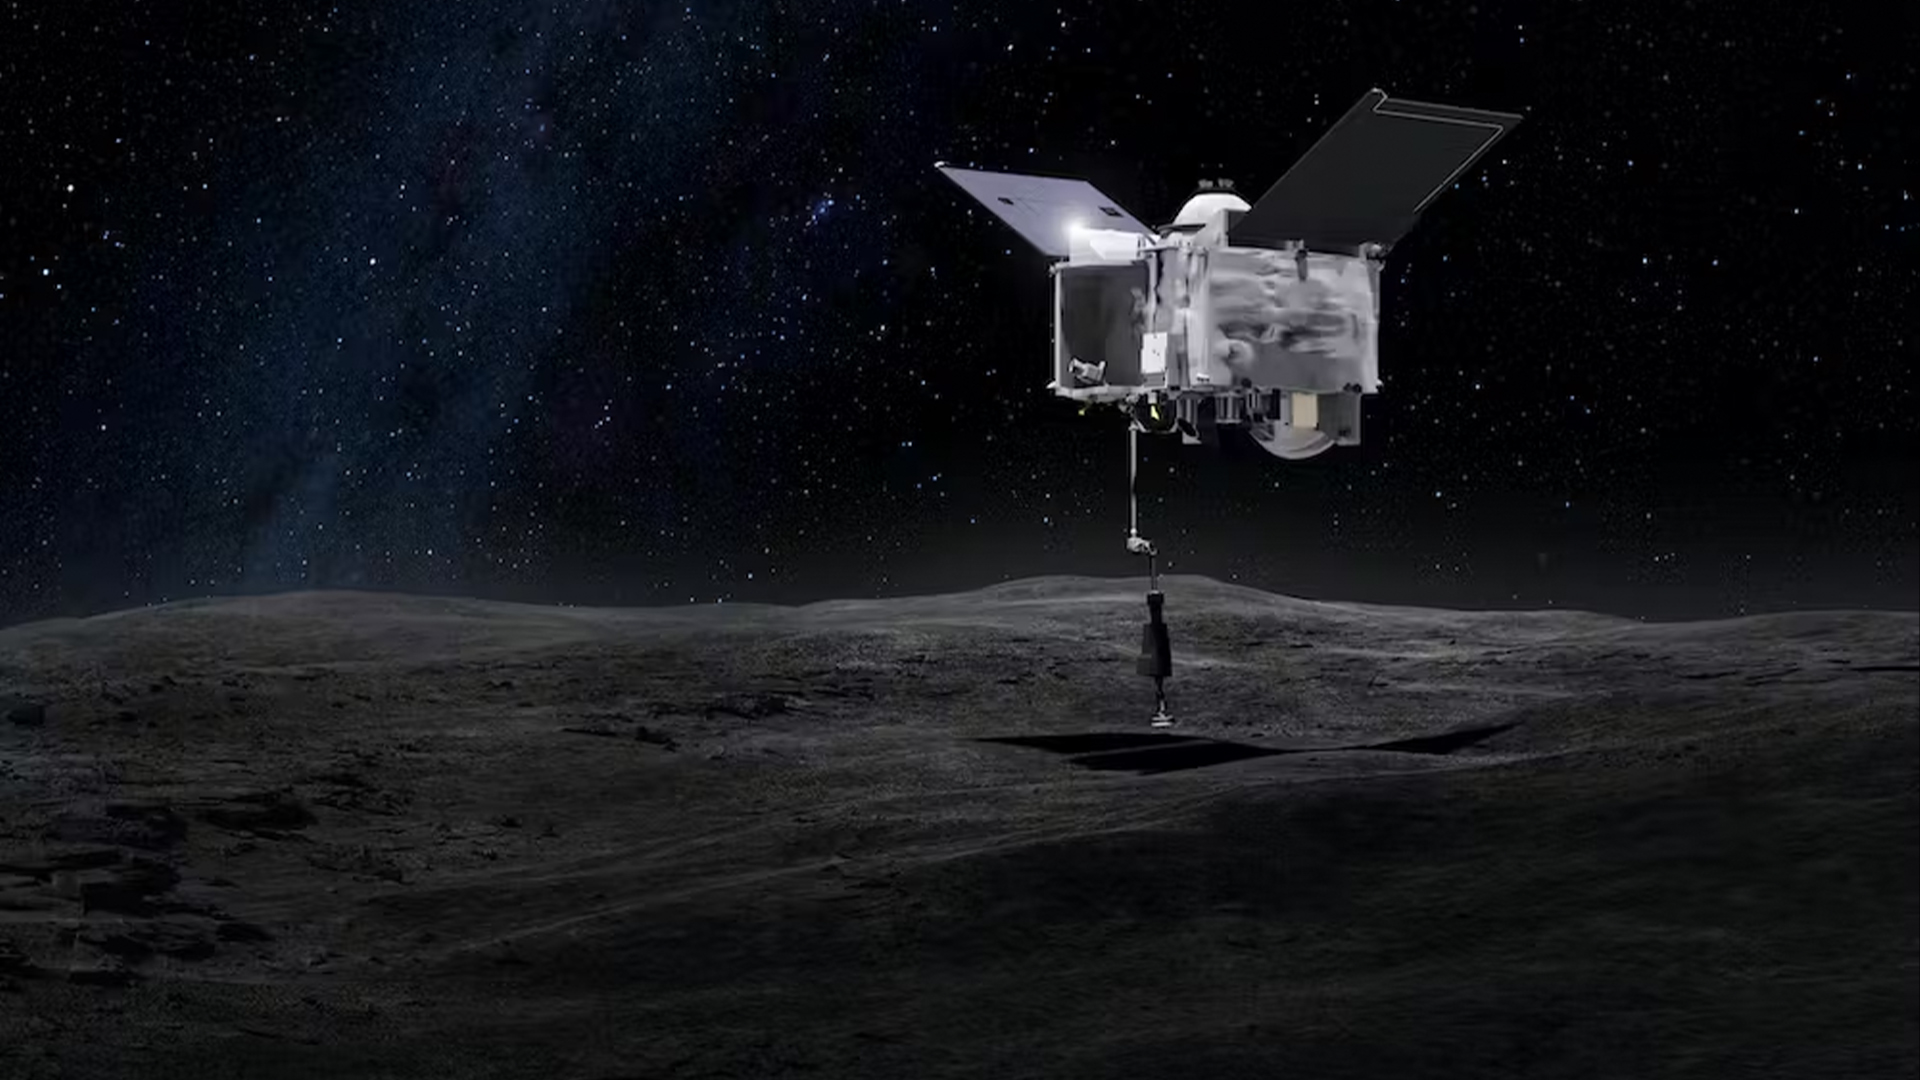 La NASA finalmente abre una cápsula hacia el asteroide ‘Bennu’ potencialmente peligroso que podría contener semillas de vida